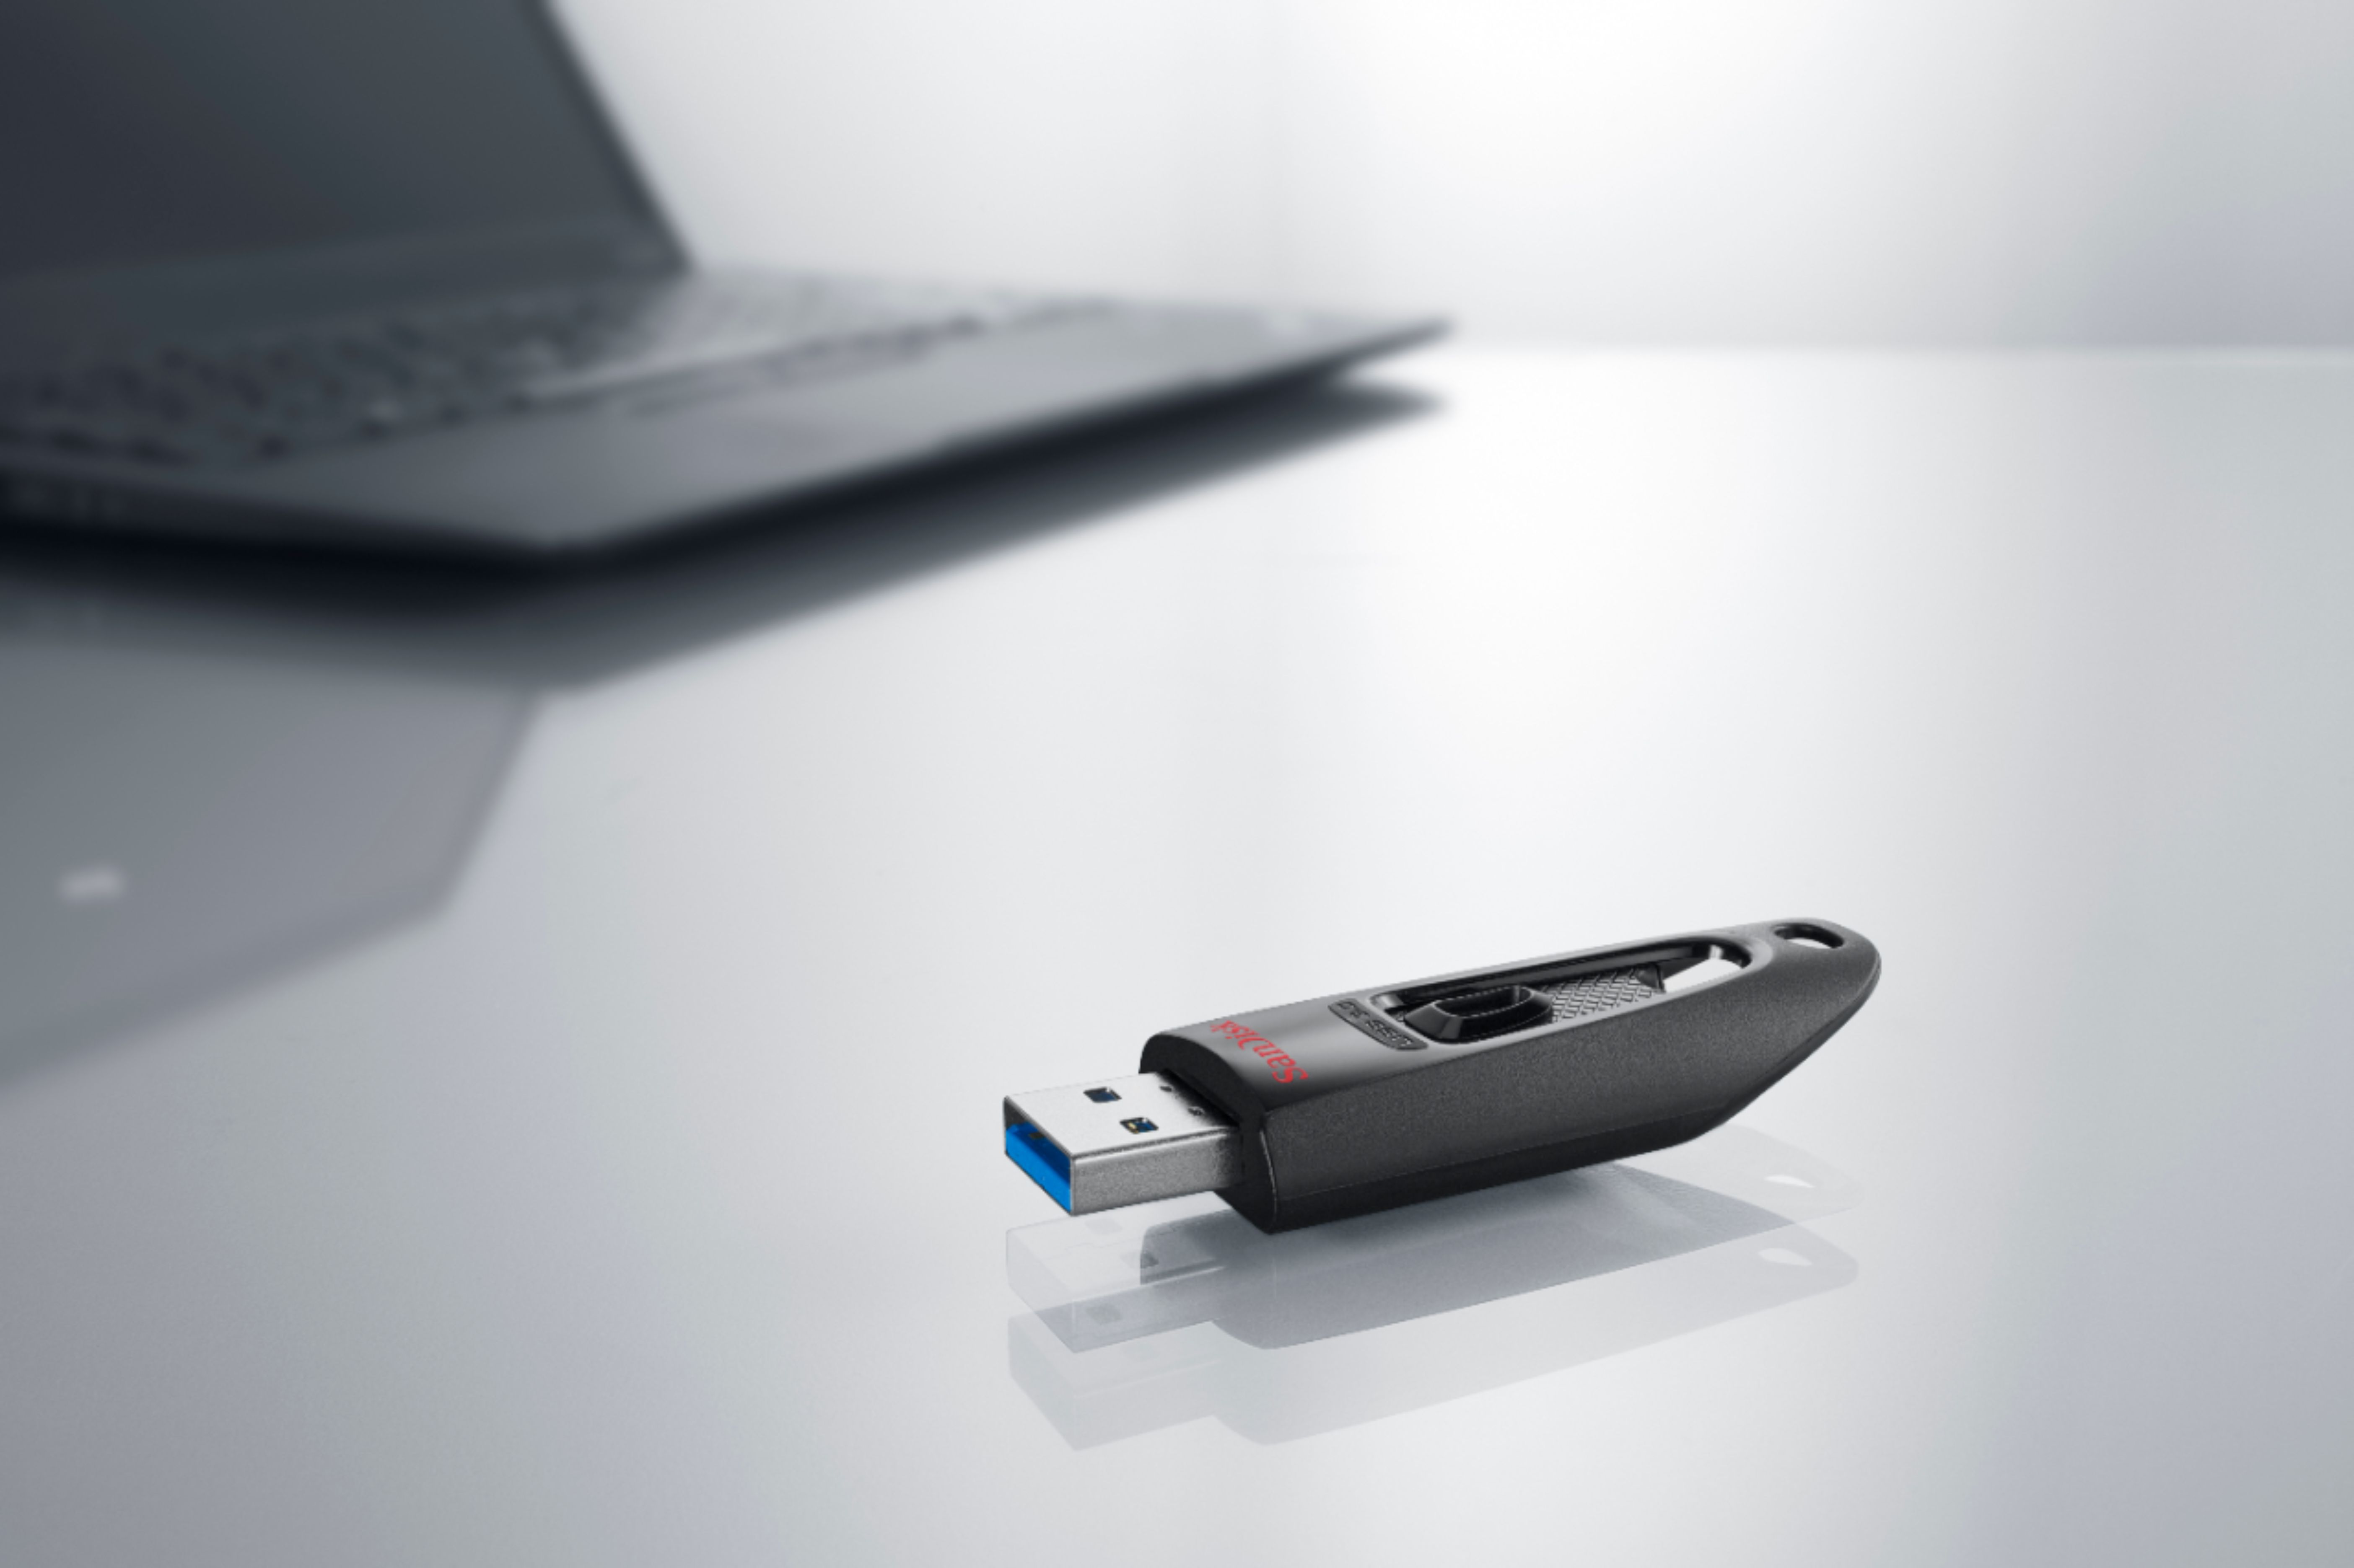 SanDisk Flash Drive, USB 3.0, Ultra, 32 GB